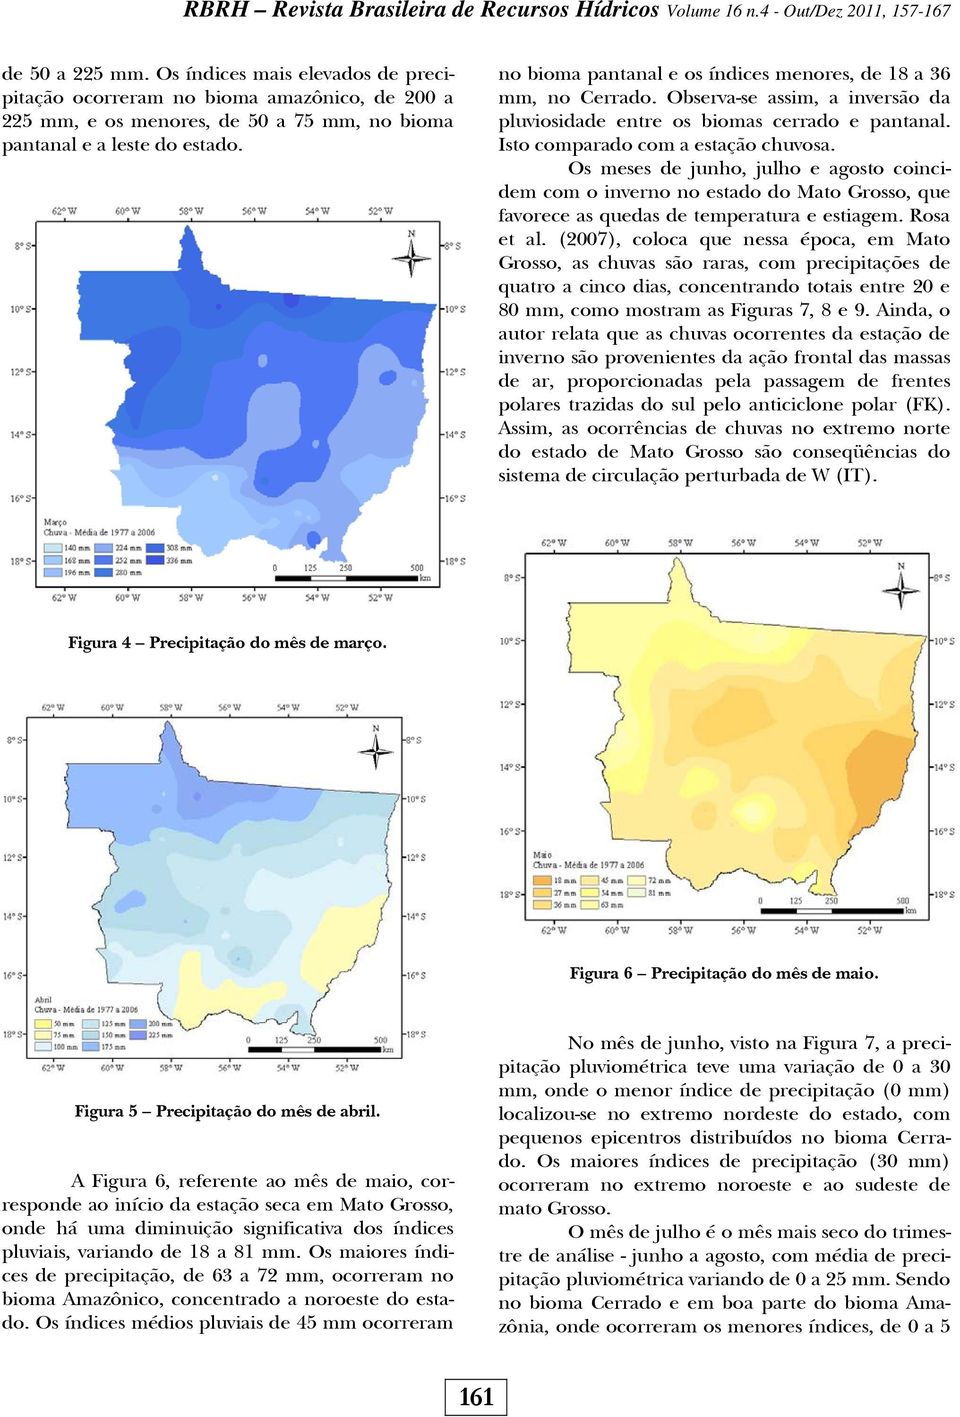 Os meses de junho, julho e agosto coincidem com o inverno no estado do Mato Grosso, que favorece as quedas de temperatura e estiagem. Rosa et al.